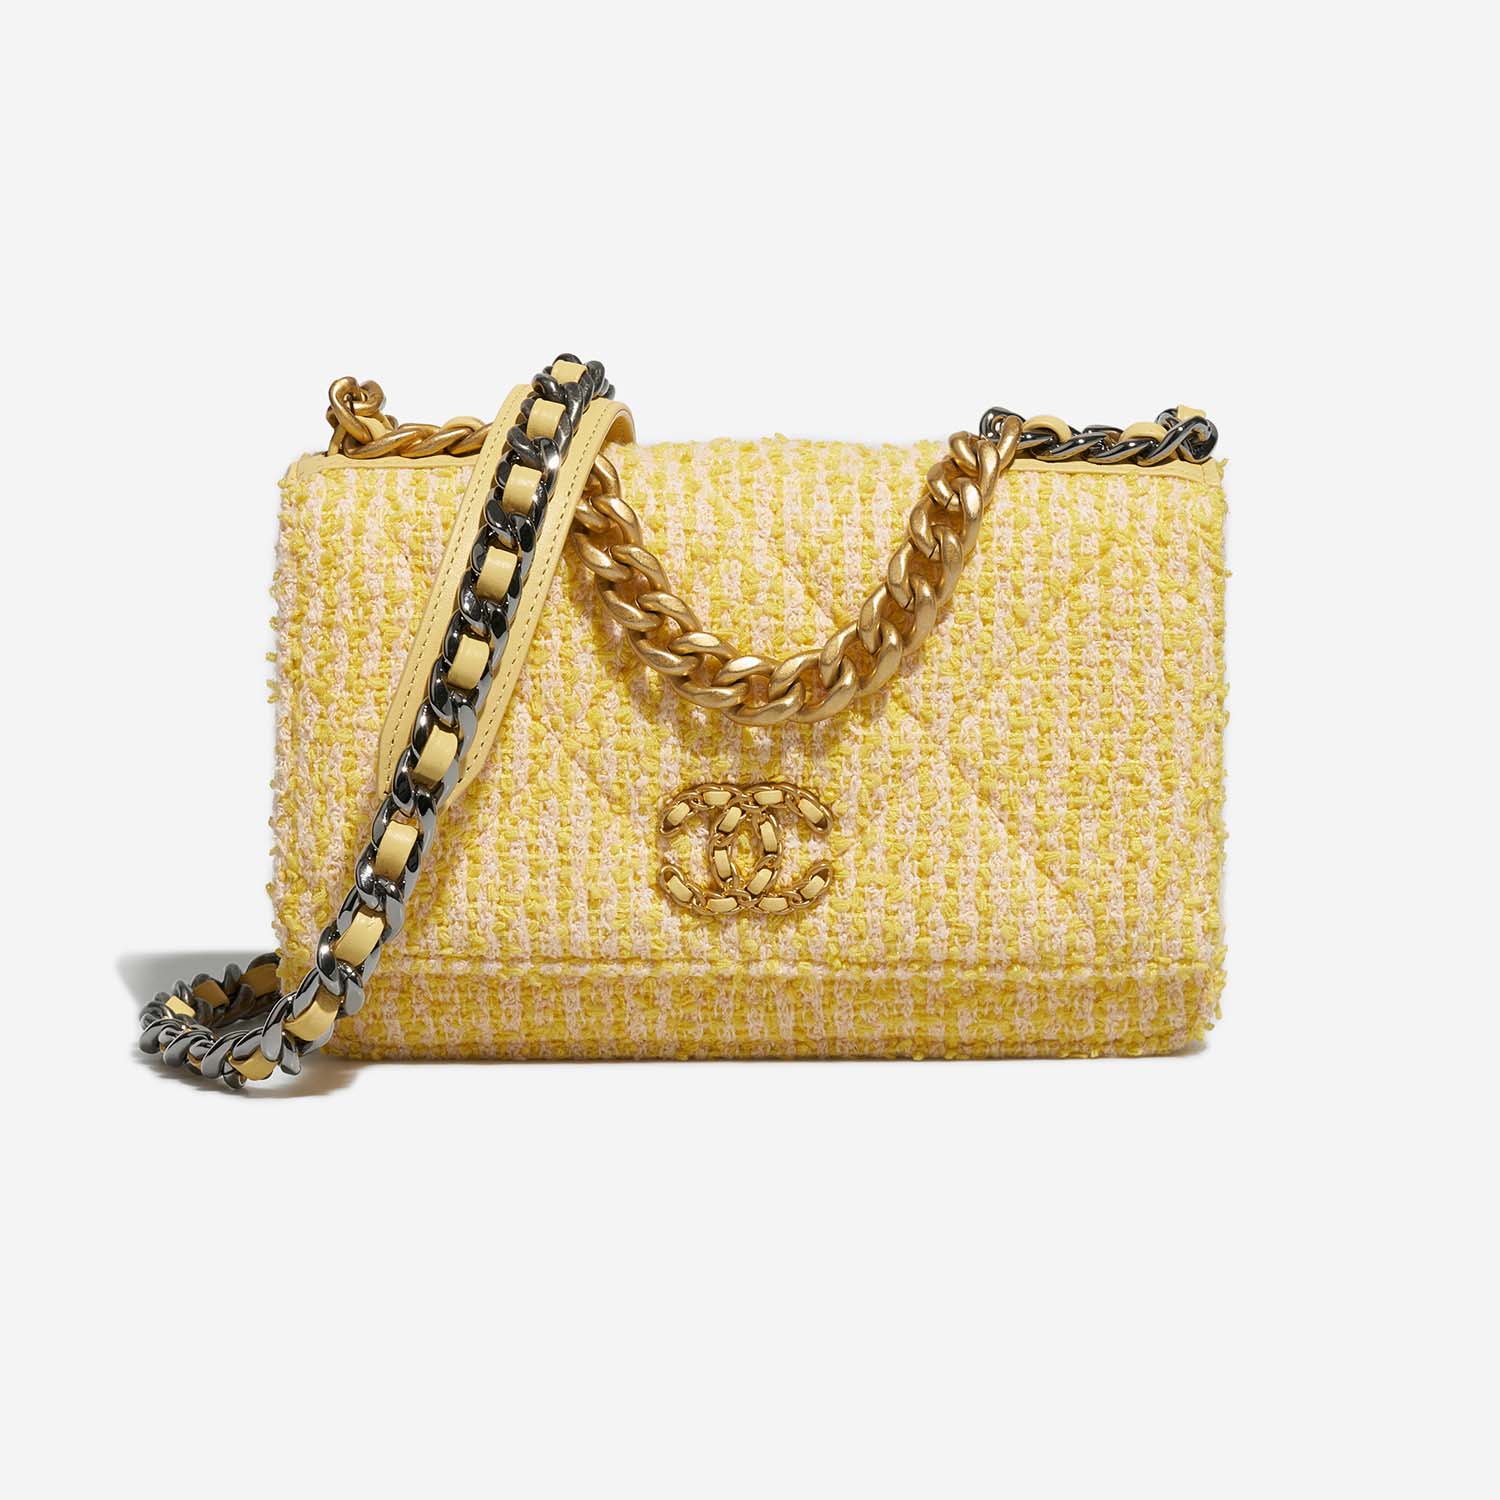 Chanel 19 WOC Gelb-Beige Front | Verkaufen Sie Ihre Designer-Tasche auf Saclab.com